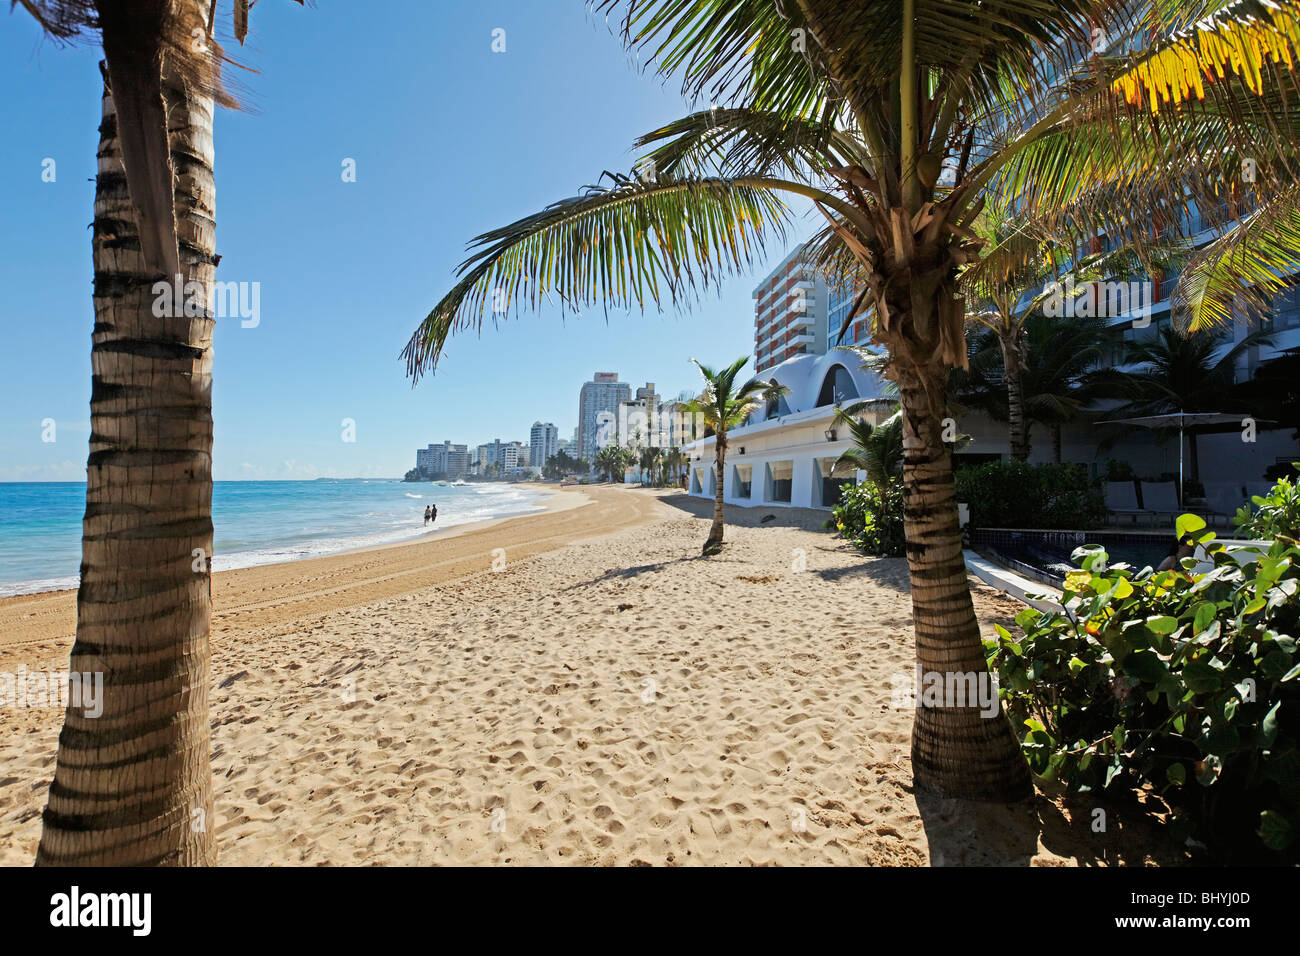 Beach of Condado, San Juan, Puerto Rico Stock Photo